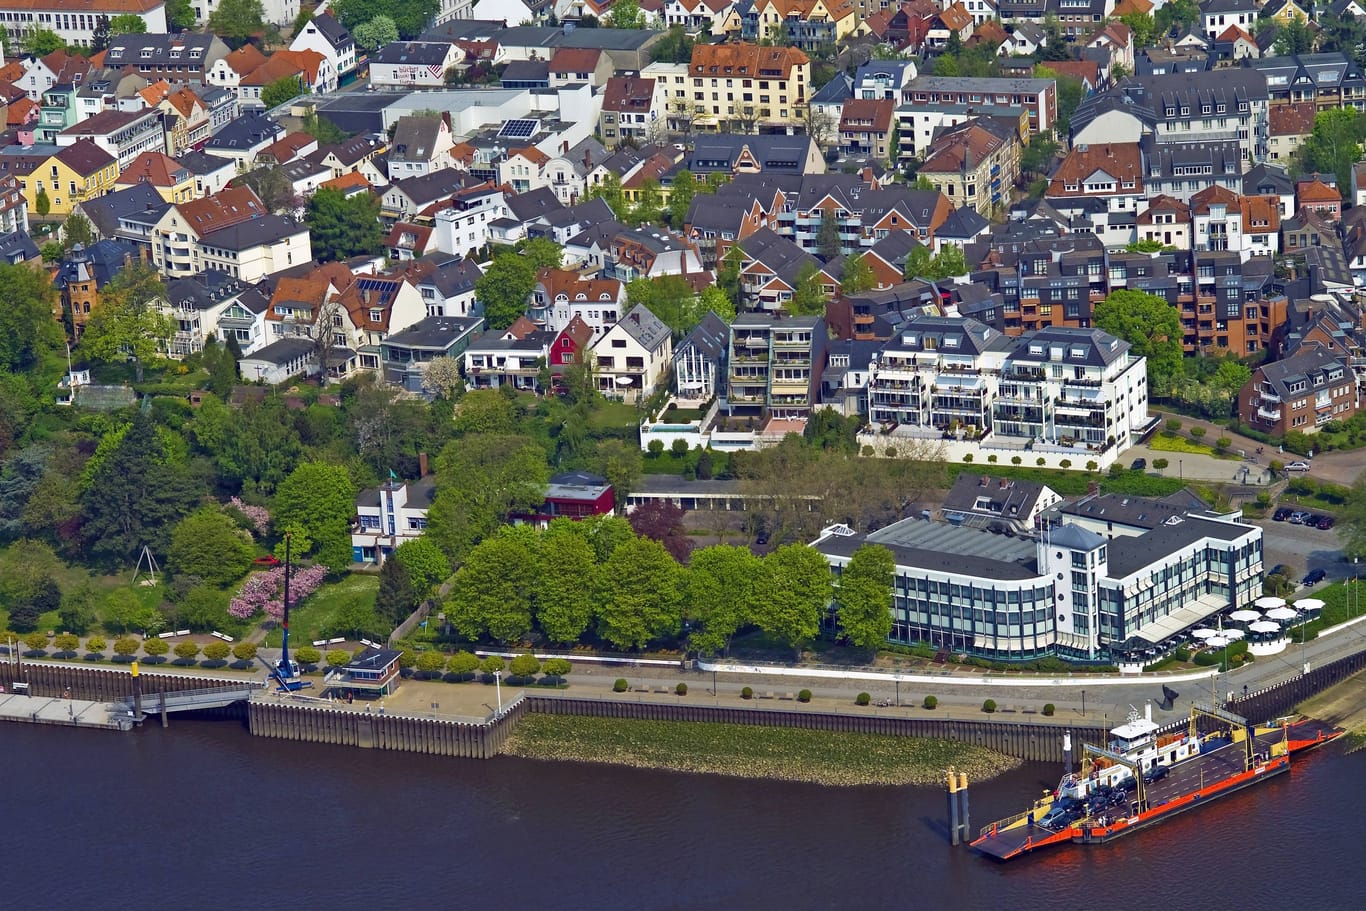 Luftbild von der Vegesacker Altstadt mit Strandlust (Archivfoto): Der Betreiber des traditionsreichen Hotels musste 2020 Insolvenz anmelden.